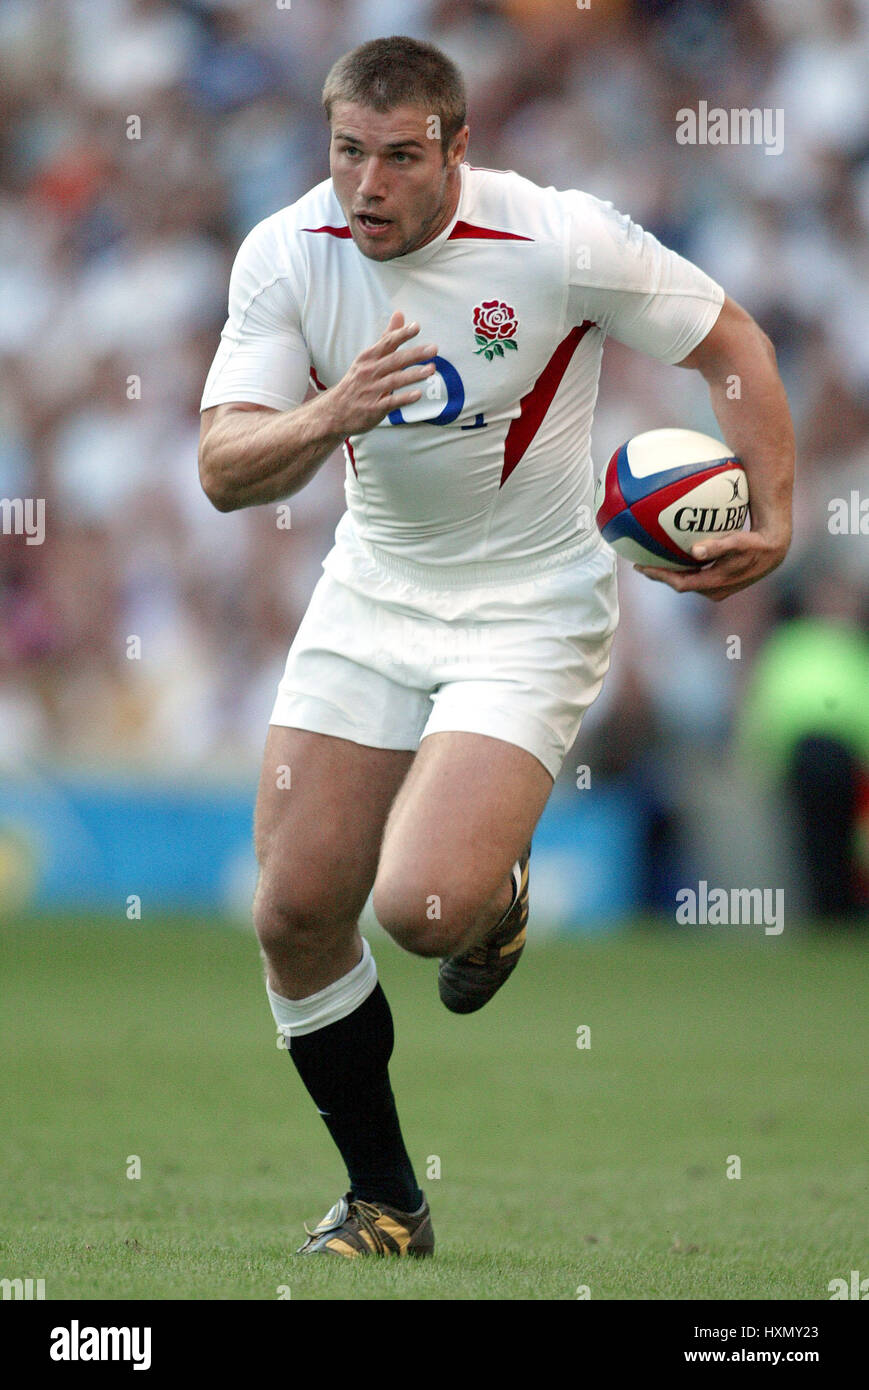 Ben cohen rugby immagini e fotografie stock ad alta risoluzione - Alamy